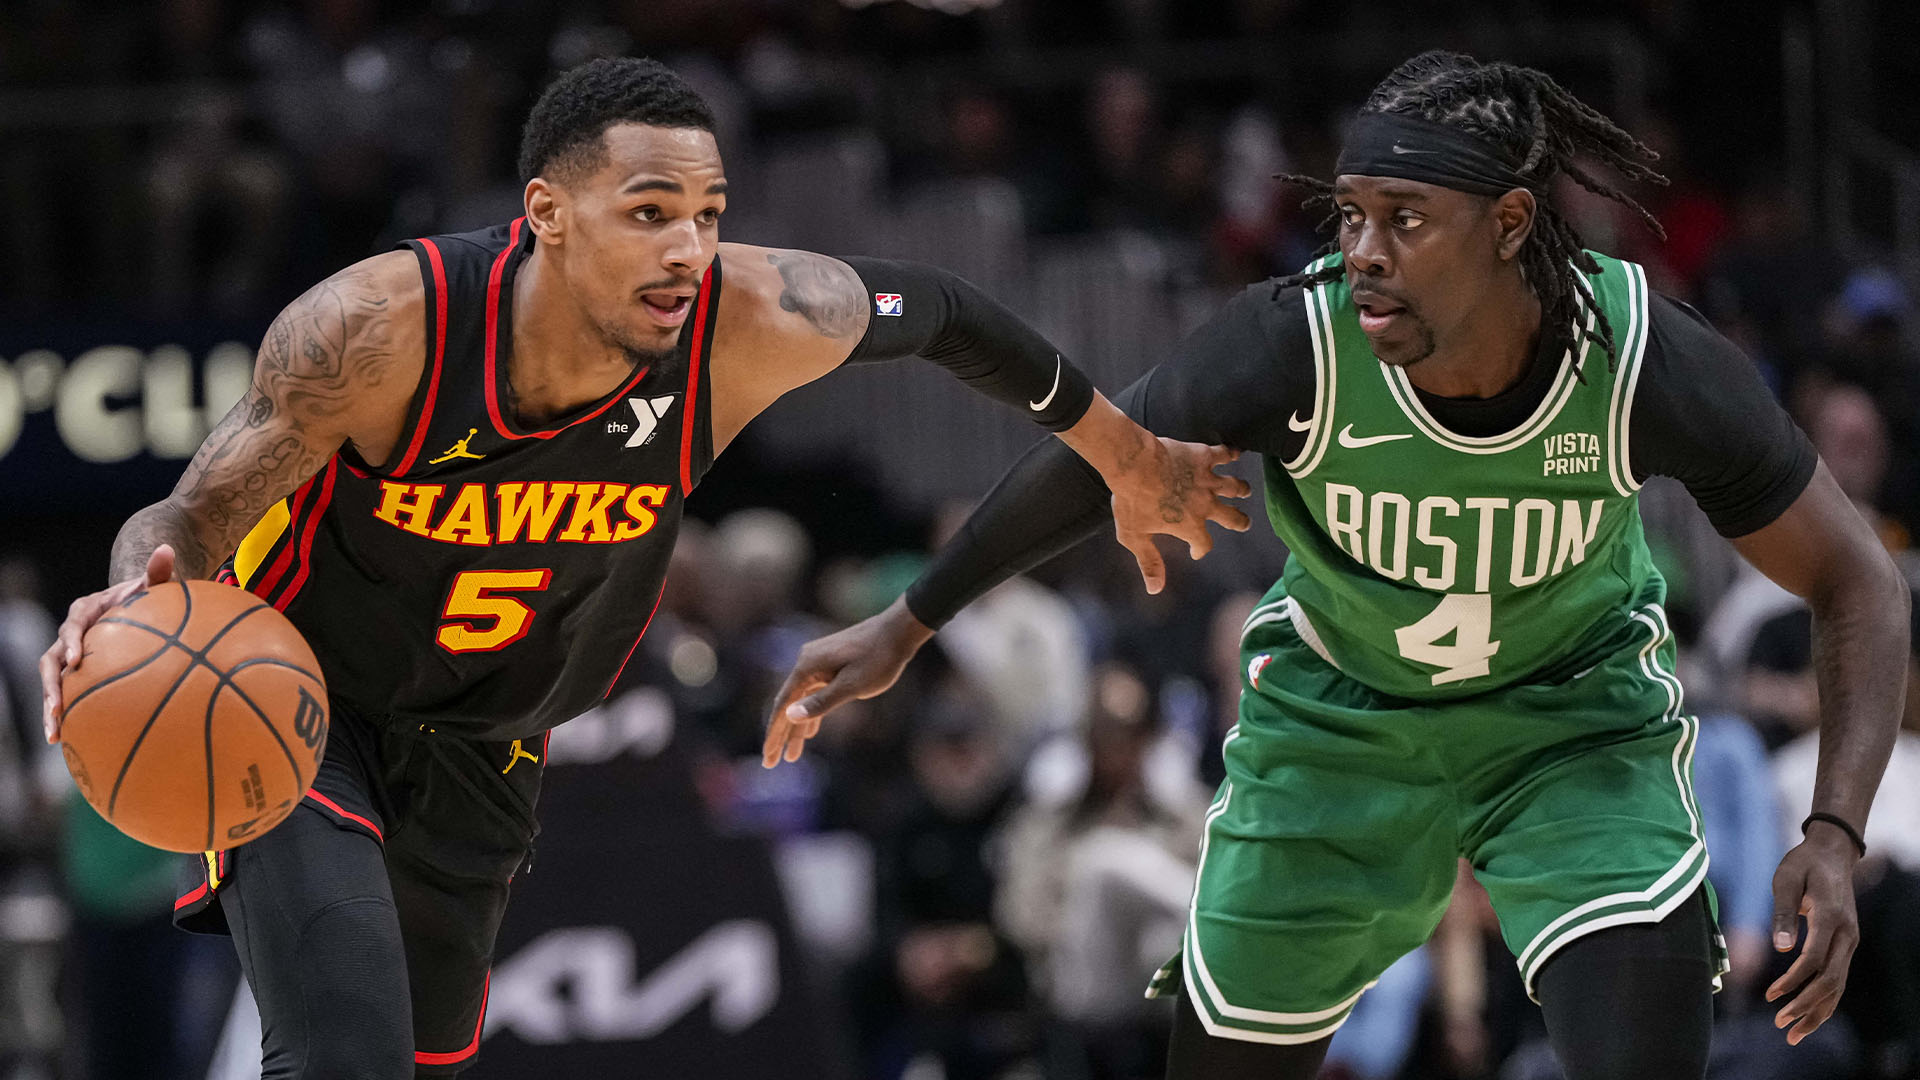 NBA : Murray XXL, les Hawks s'offrent encore les Celtics sur le gong